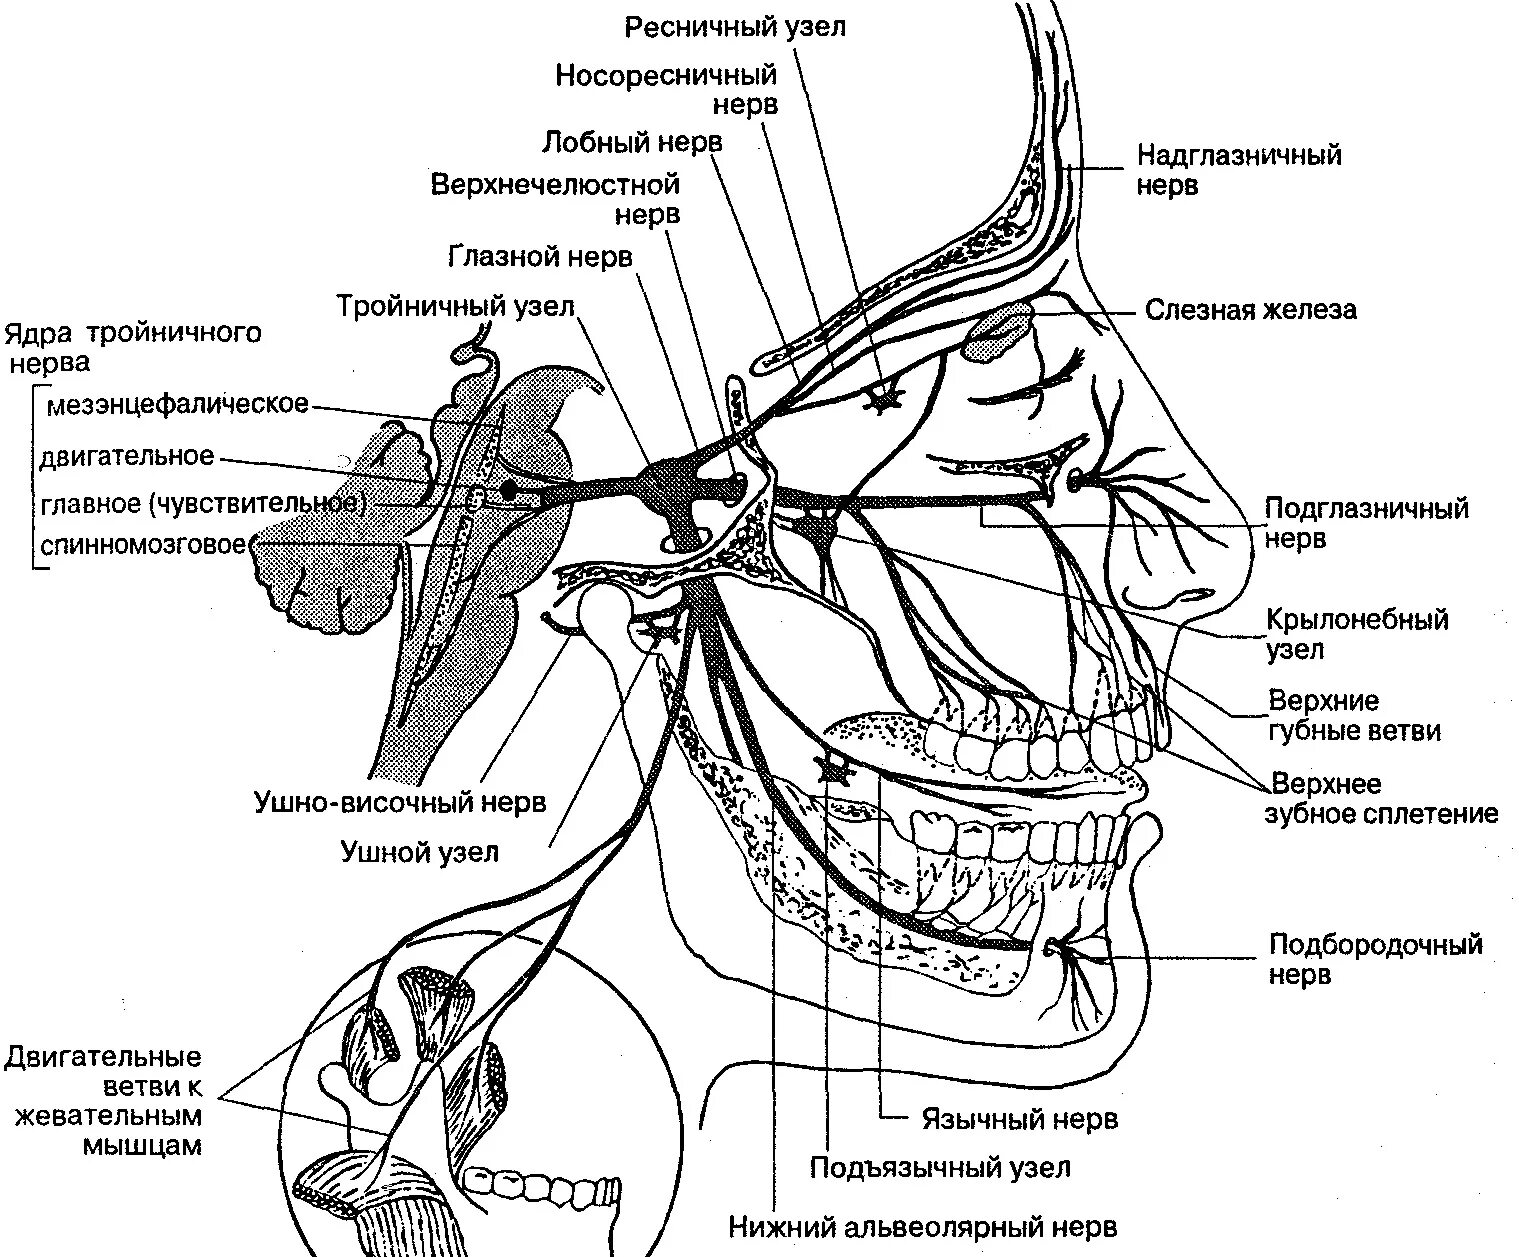 Ветви тройничного нерва анатомия. Схема проекции ветвей тройничного нерва. Иннервация тройничного нерва схема. Узлы тройничного нерва анатомия. Нервы лицевого черепа